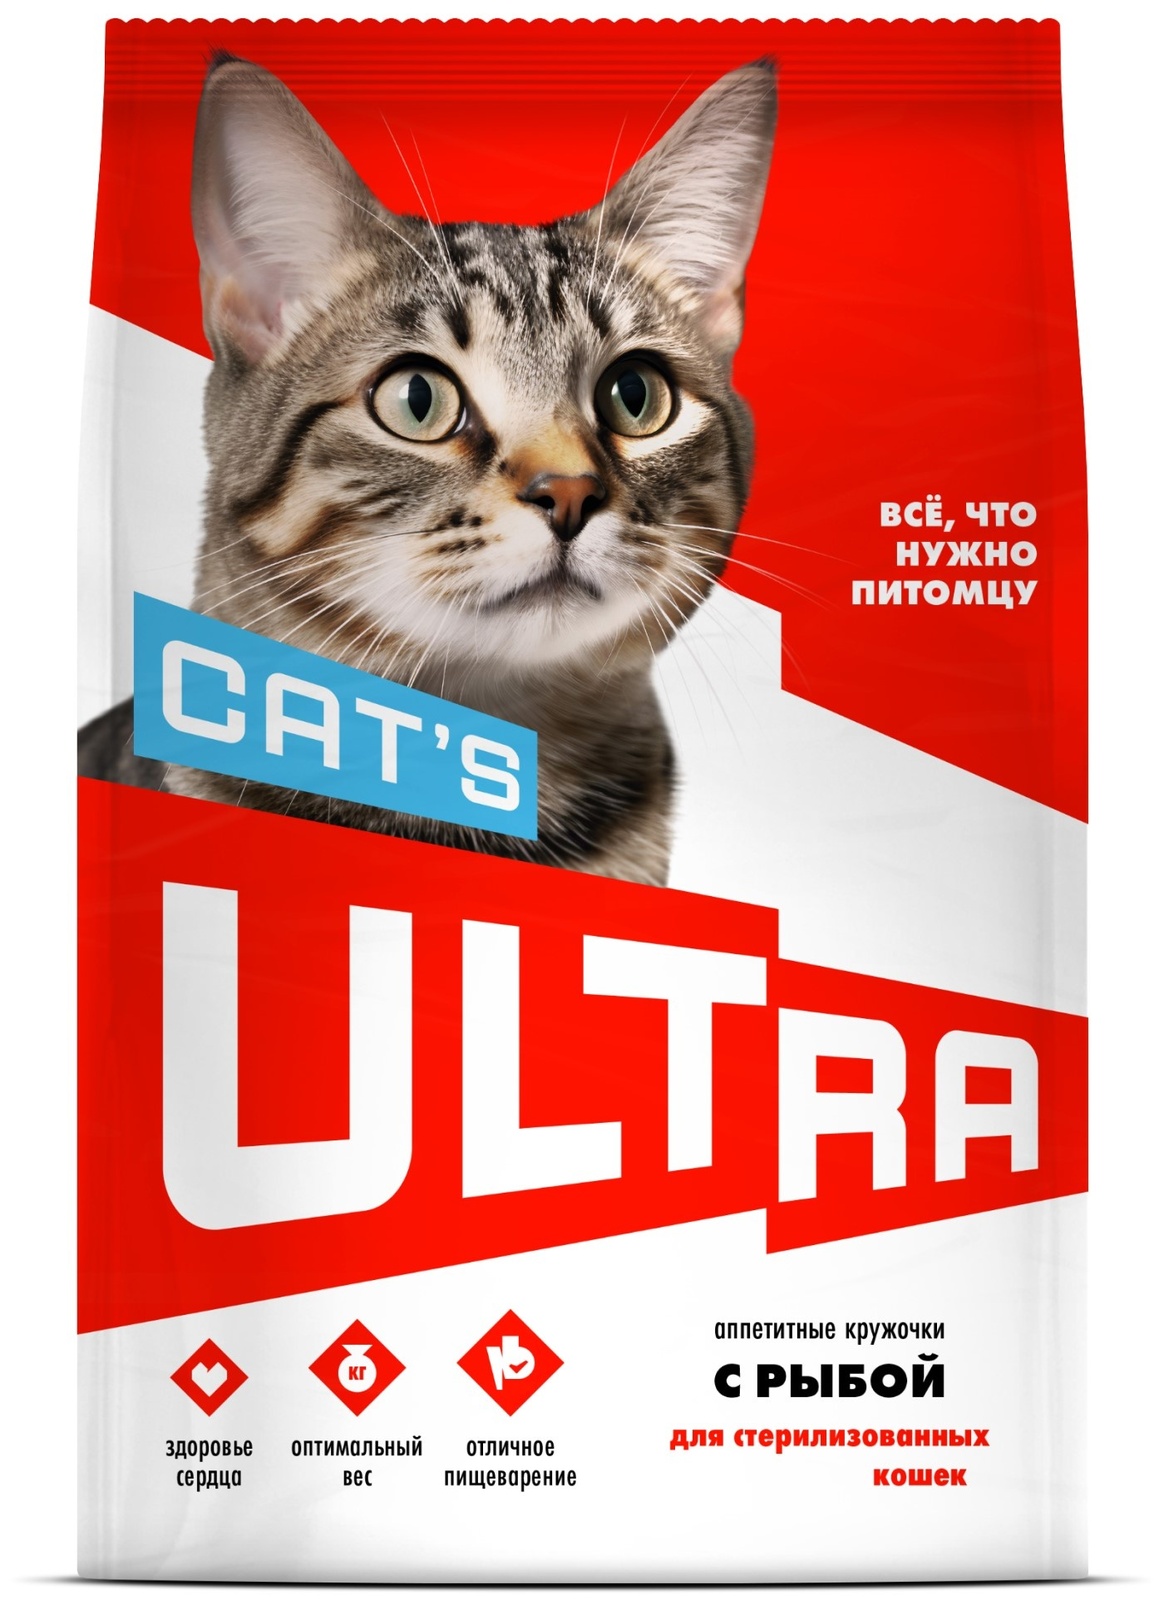 ULTRA ULTRA аппетитные кружочки с рыбой для стерилизованных кошек (600 г) ultra ultra аппетитные кружочки 3 вида мяса для взрослых собак всех пород 600 г